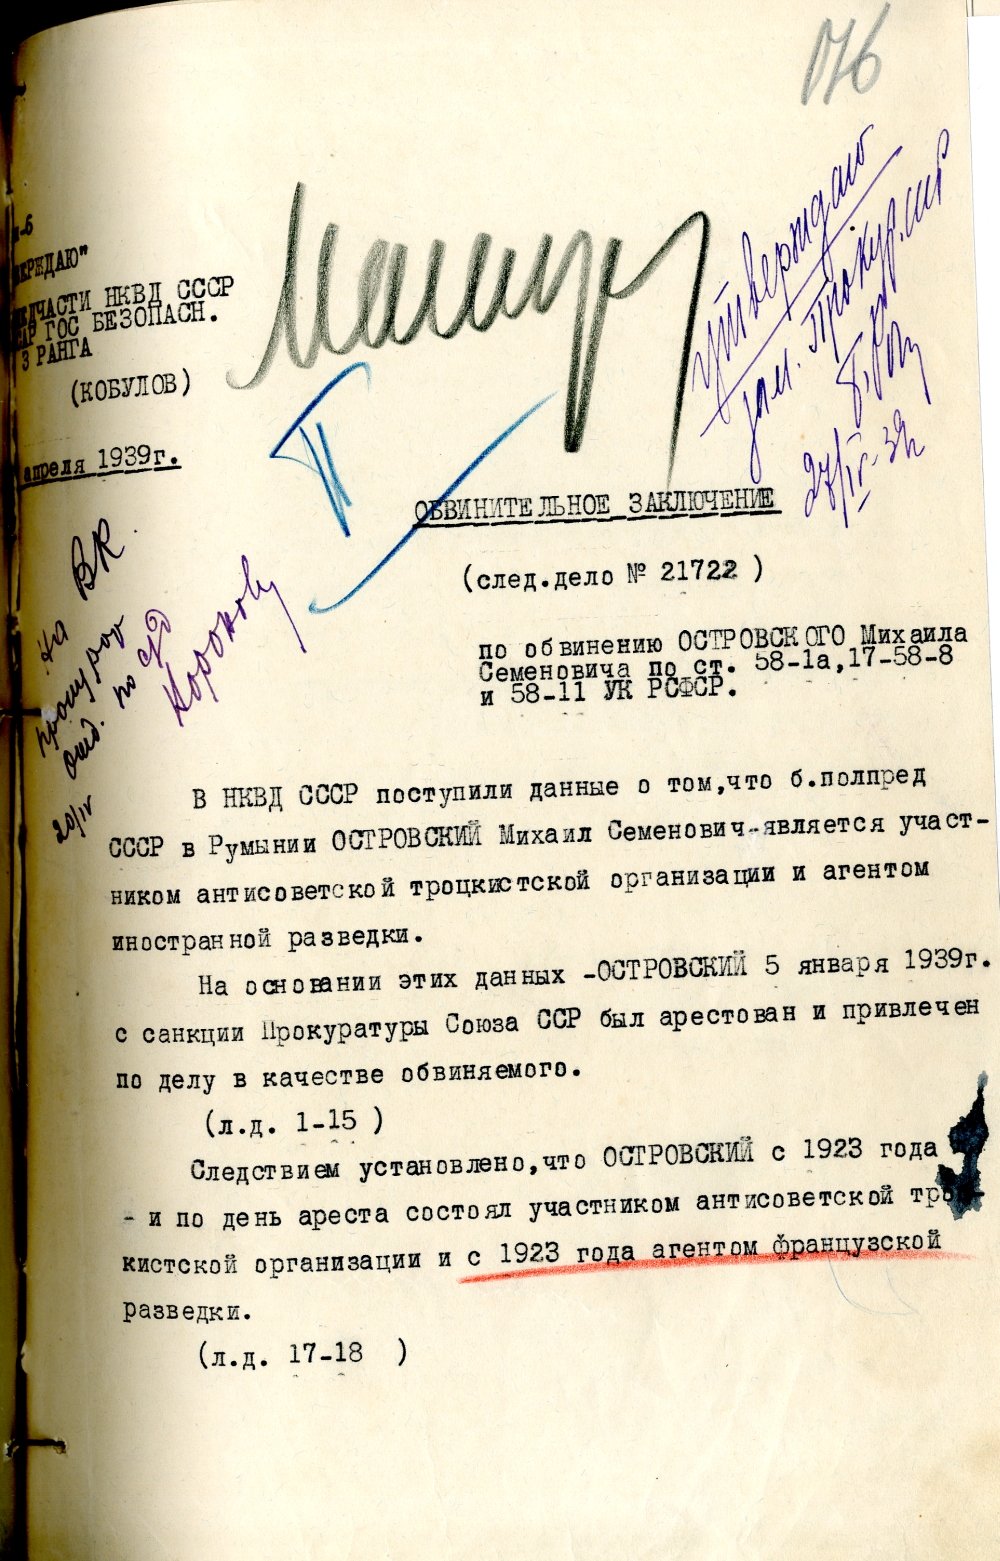 Решение приговора закрытого судебного заседания по делу Михаила Островского, обвиняемого в шпионаже в пользу французской разведки и в участии в троцкистской антисоветской организации. 20 апреля 1939 г.